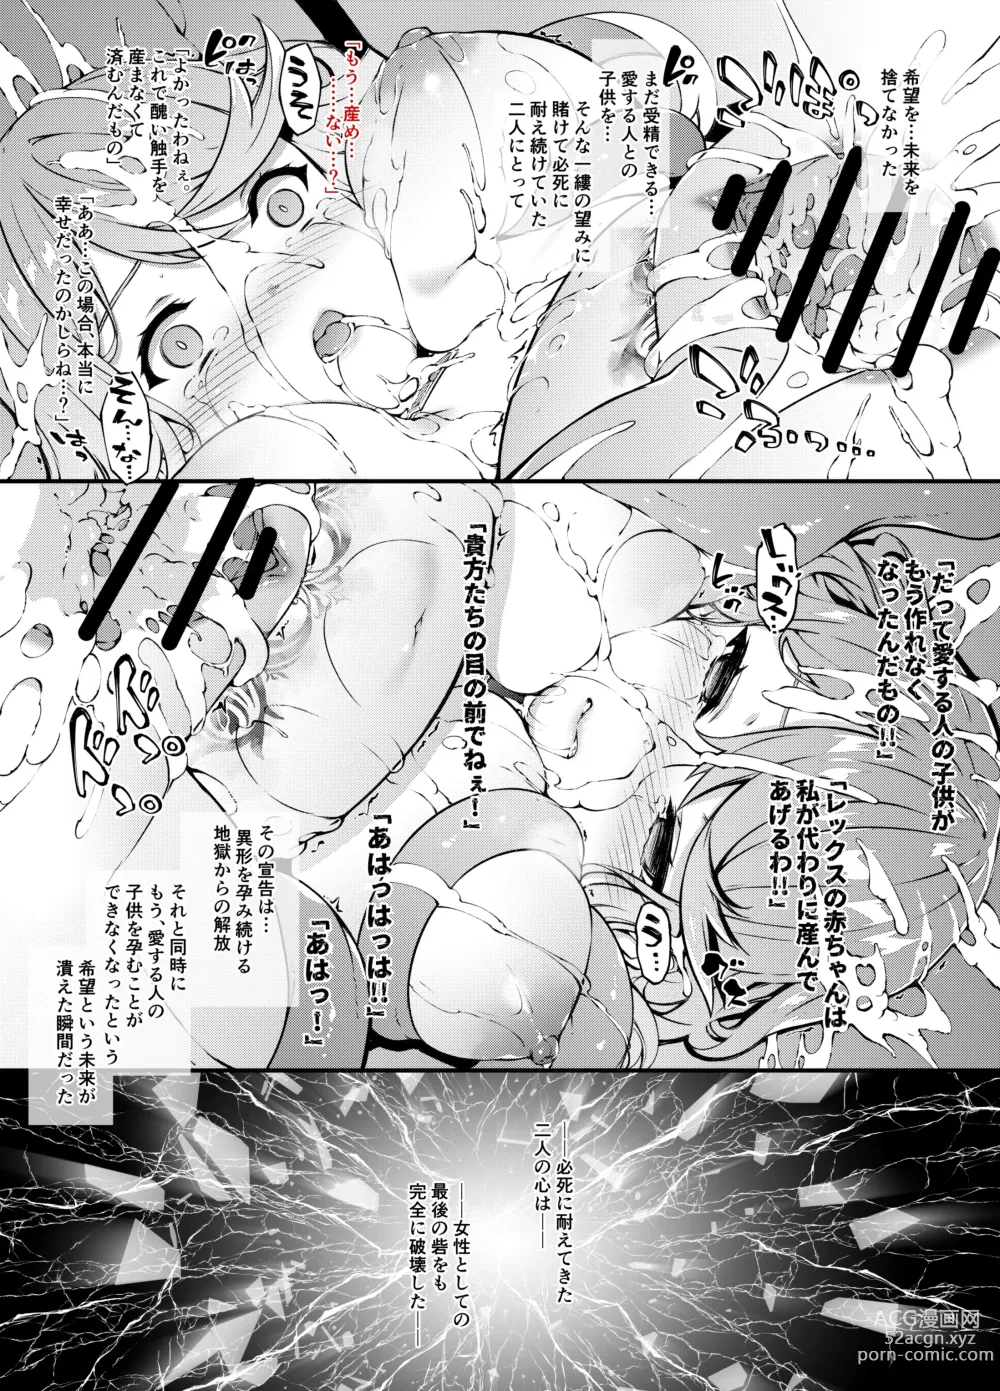 Page 40 of doujinshi Fallen Blade